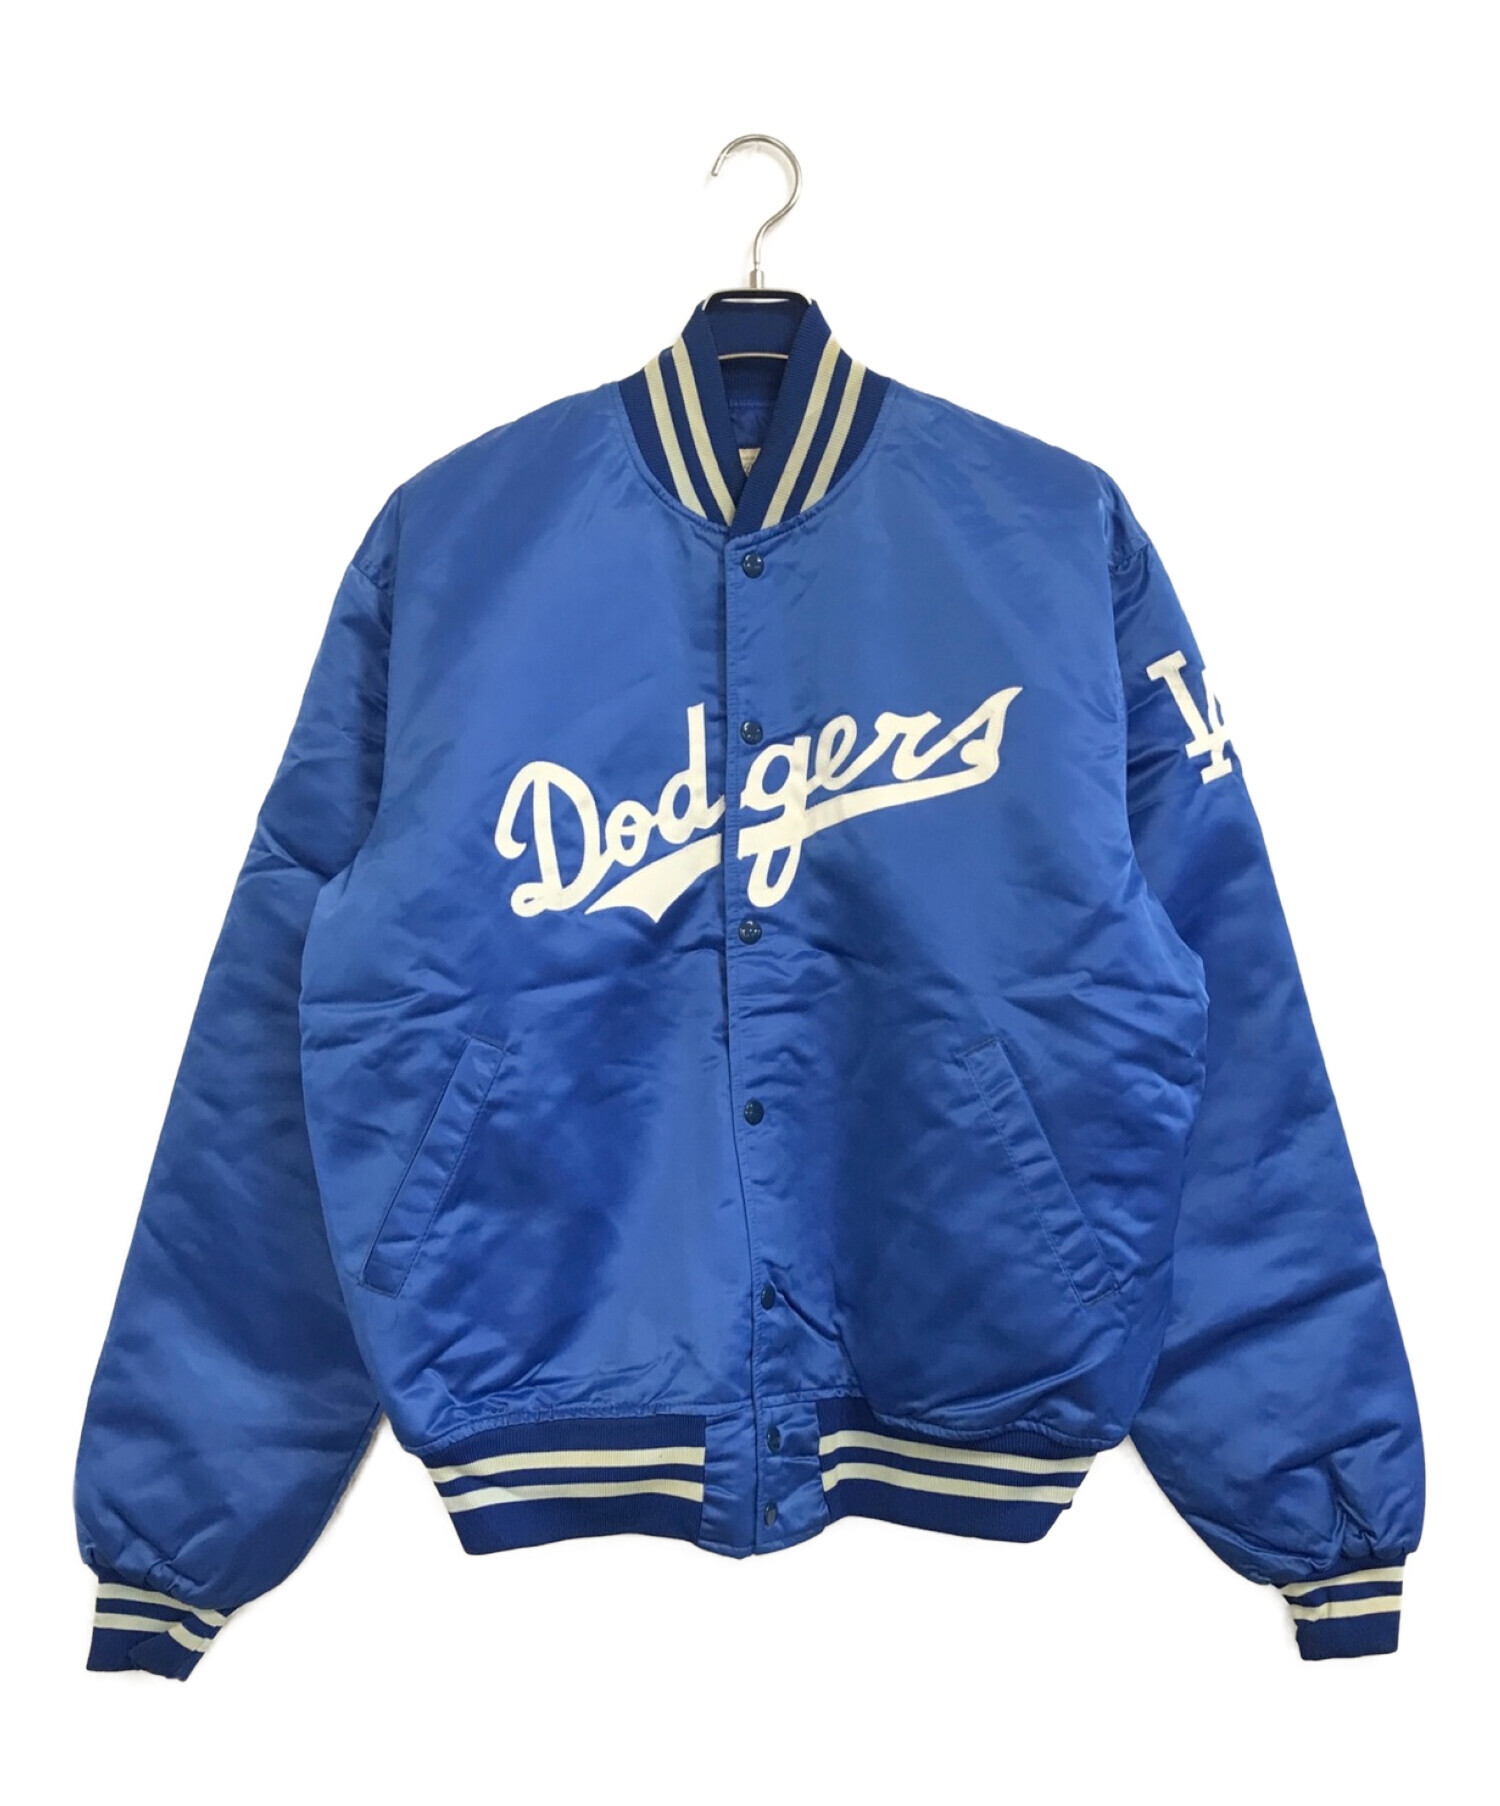 Dodgers (ドジャース) [古着]スタジャン ブルー サイズ:XL